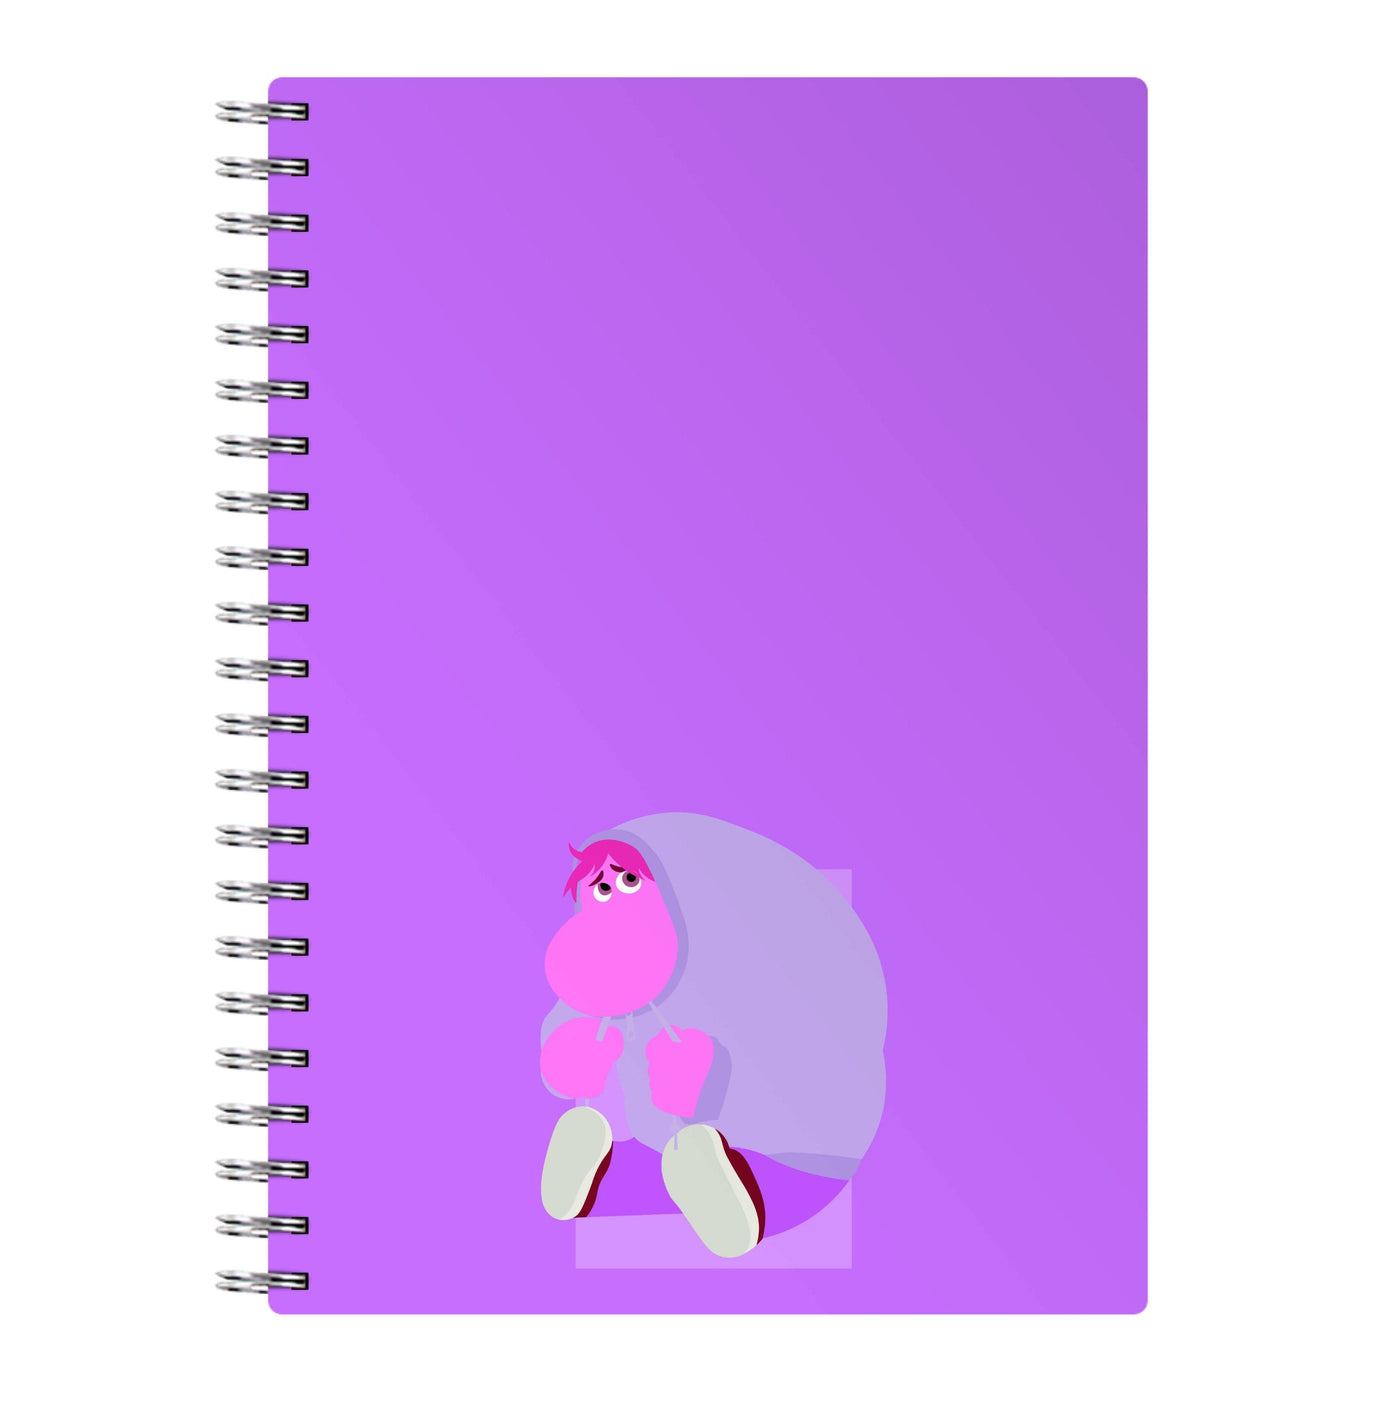 Embarrassment - Inside Out Notebook